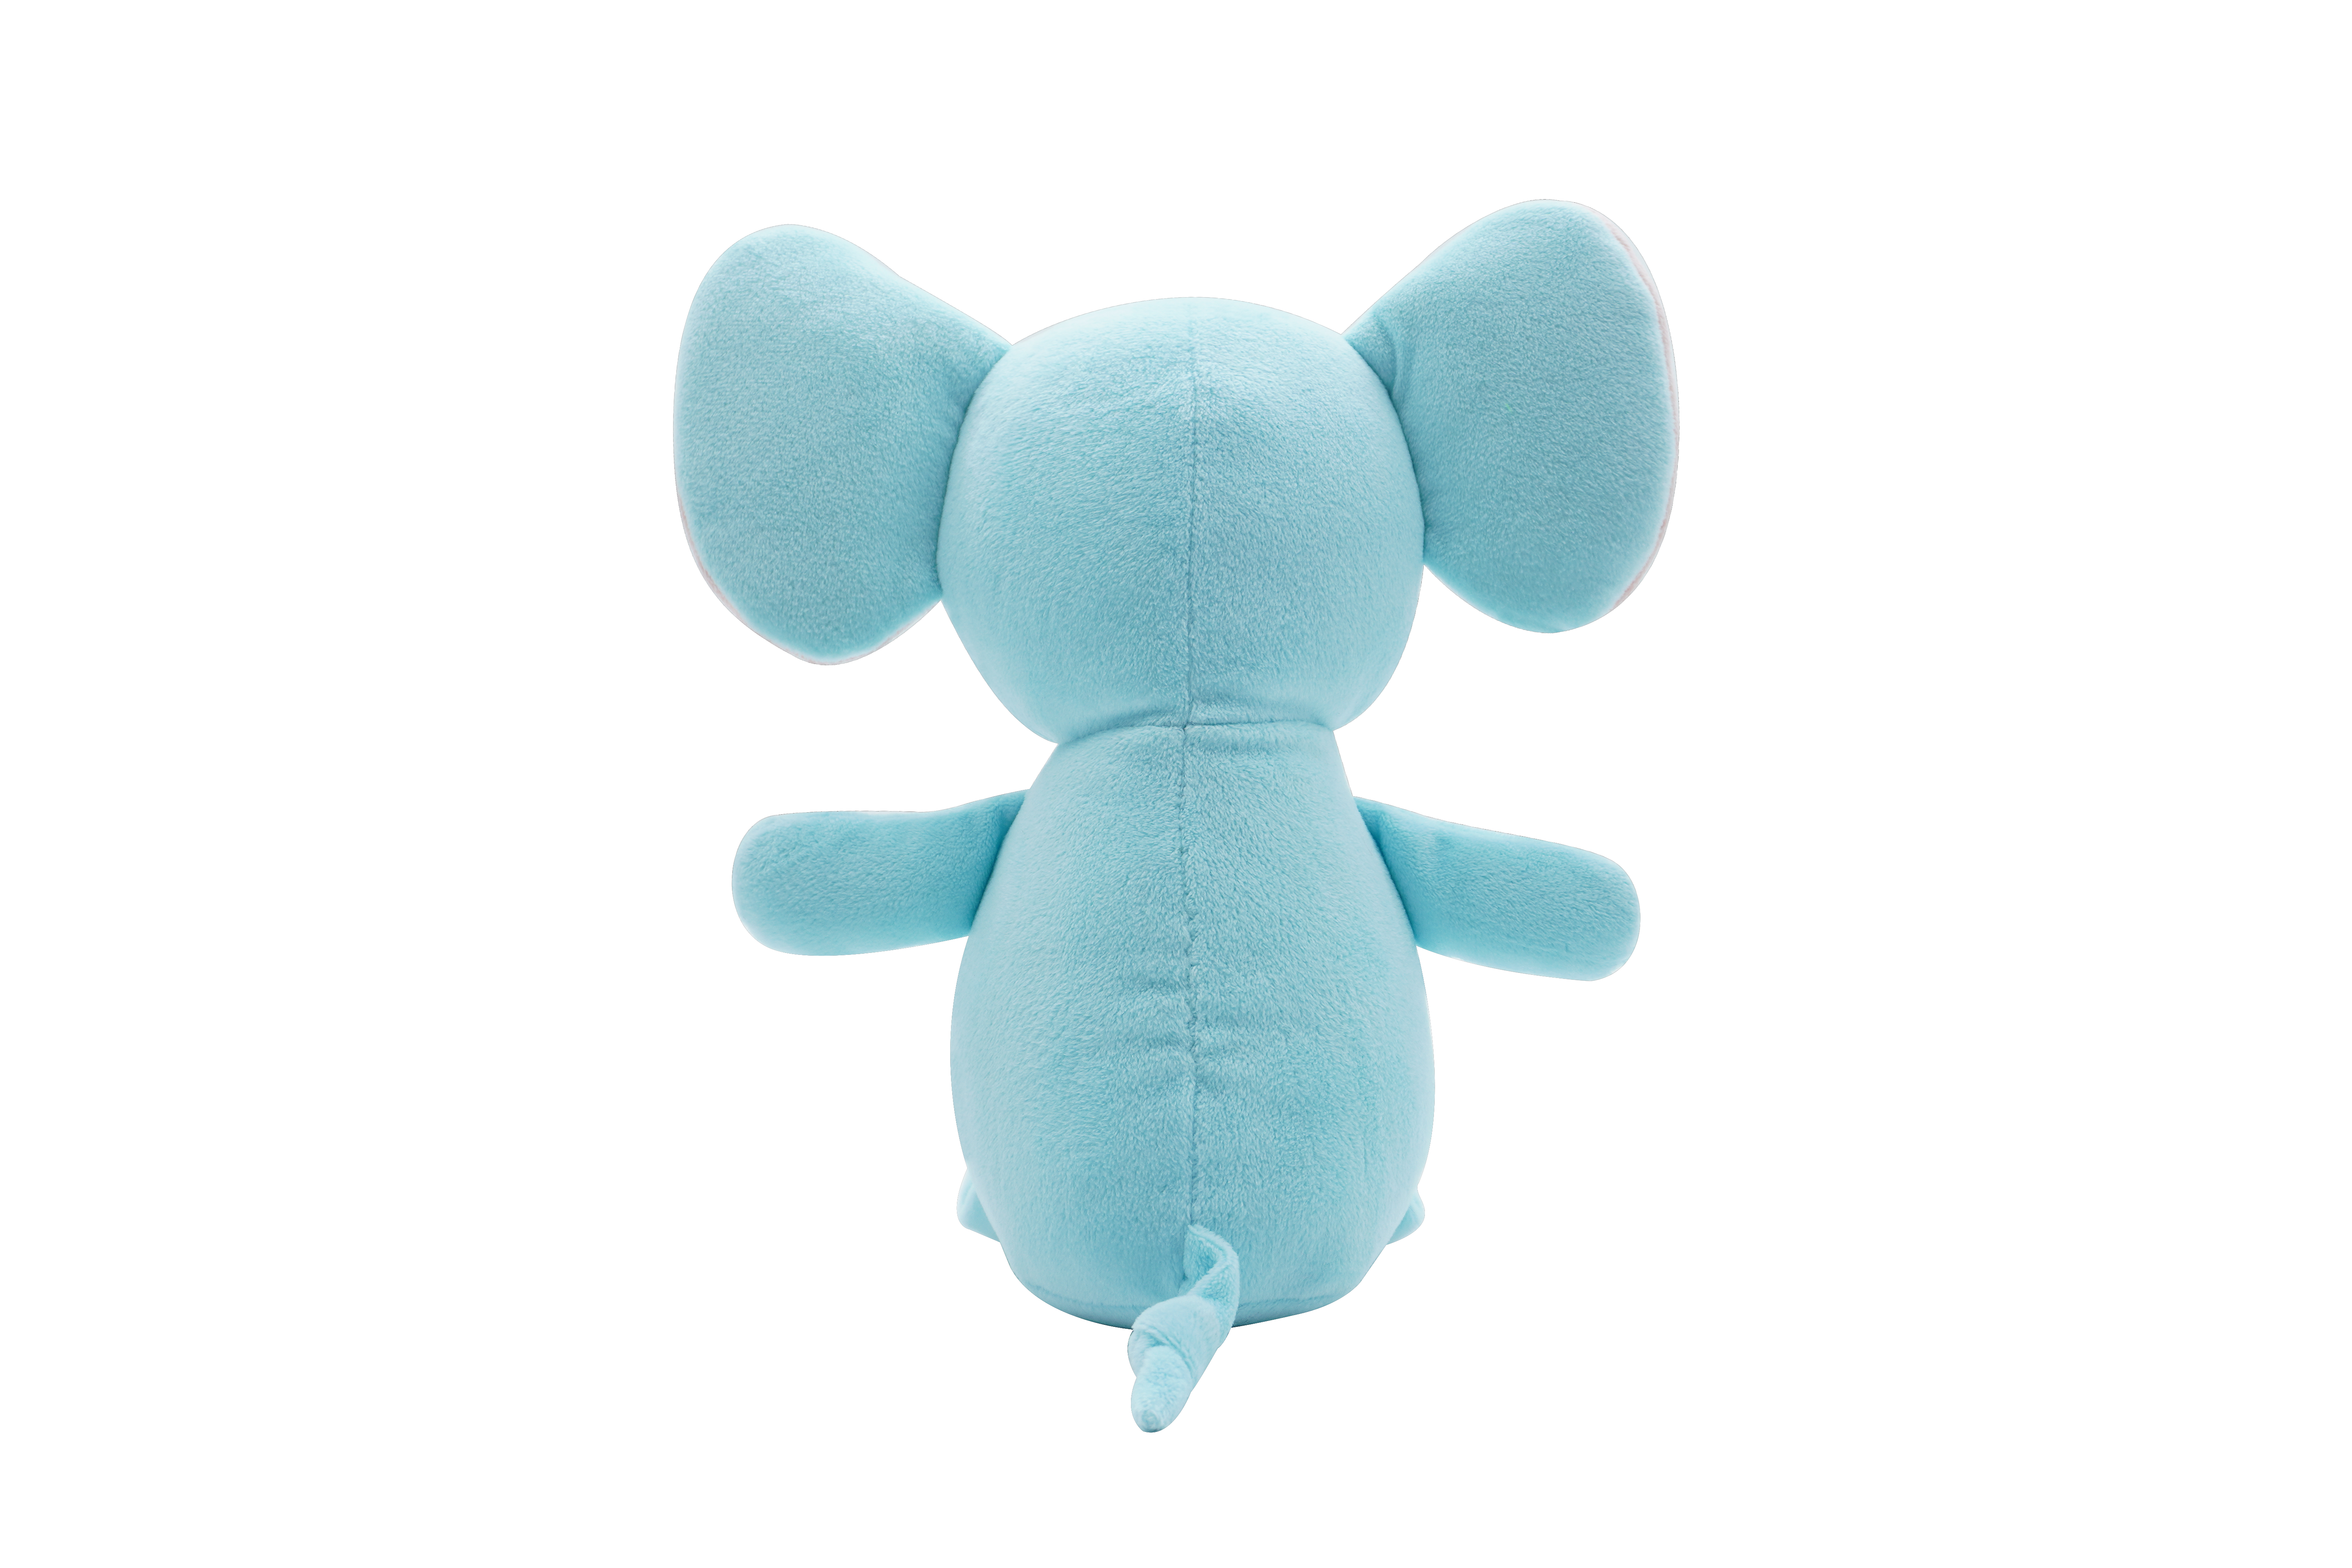 elephant plush toys odm, toys r us elephant plush, mini elephant plush toy, red elephant plush toy, small plush elephant toy